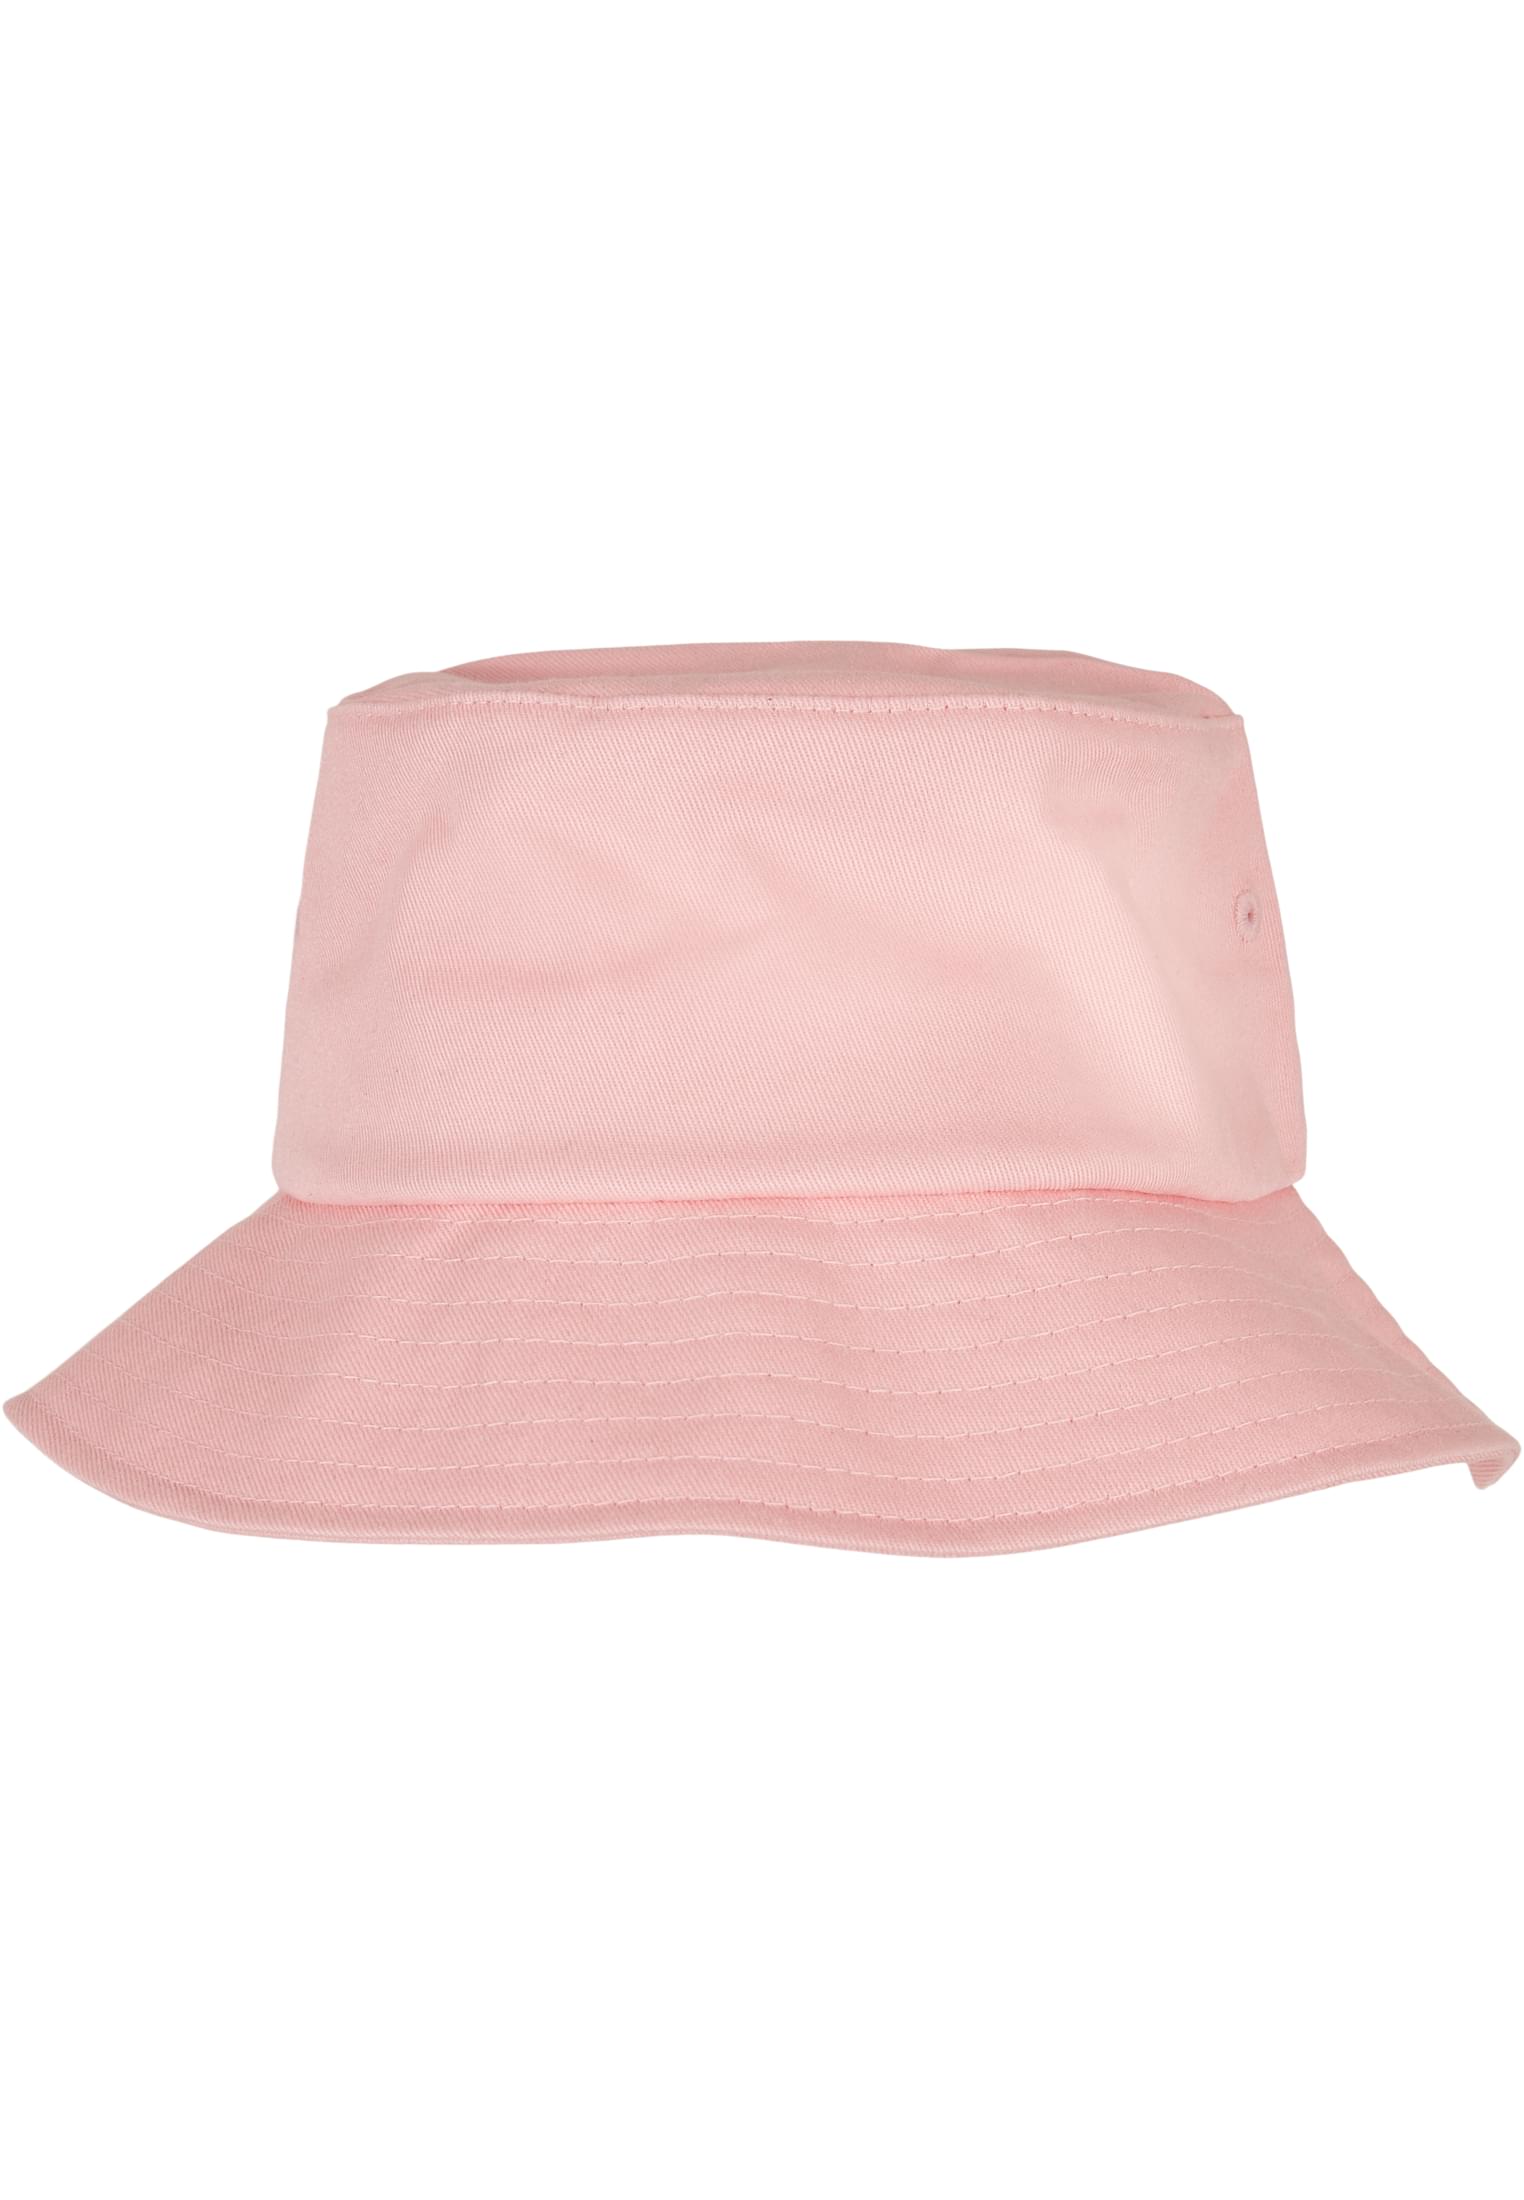 Bucket Twill Flexfit Cotton Hat-5003